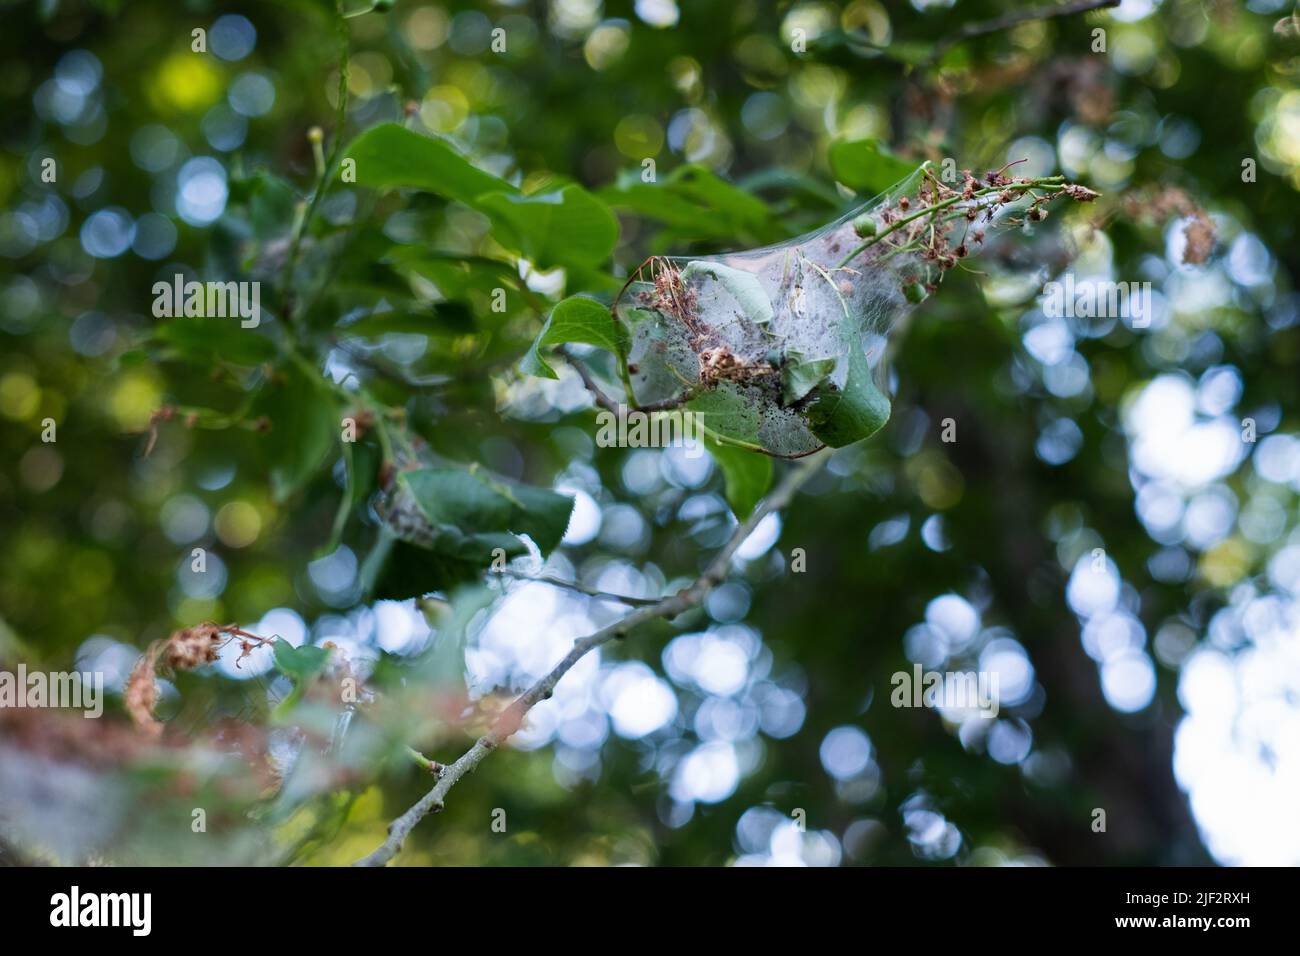 Birkbaumermin (Yponomeuta evonymella). Raupen sammeln sich in Nestern, die aus dem Netz auf Baumblättern gewebt sind. Stockfoto